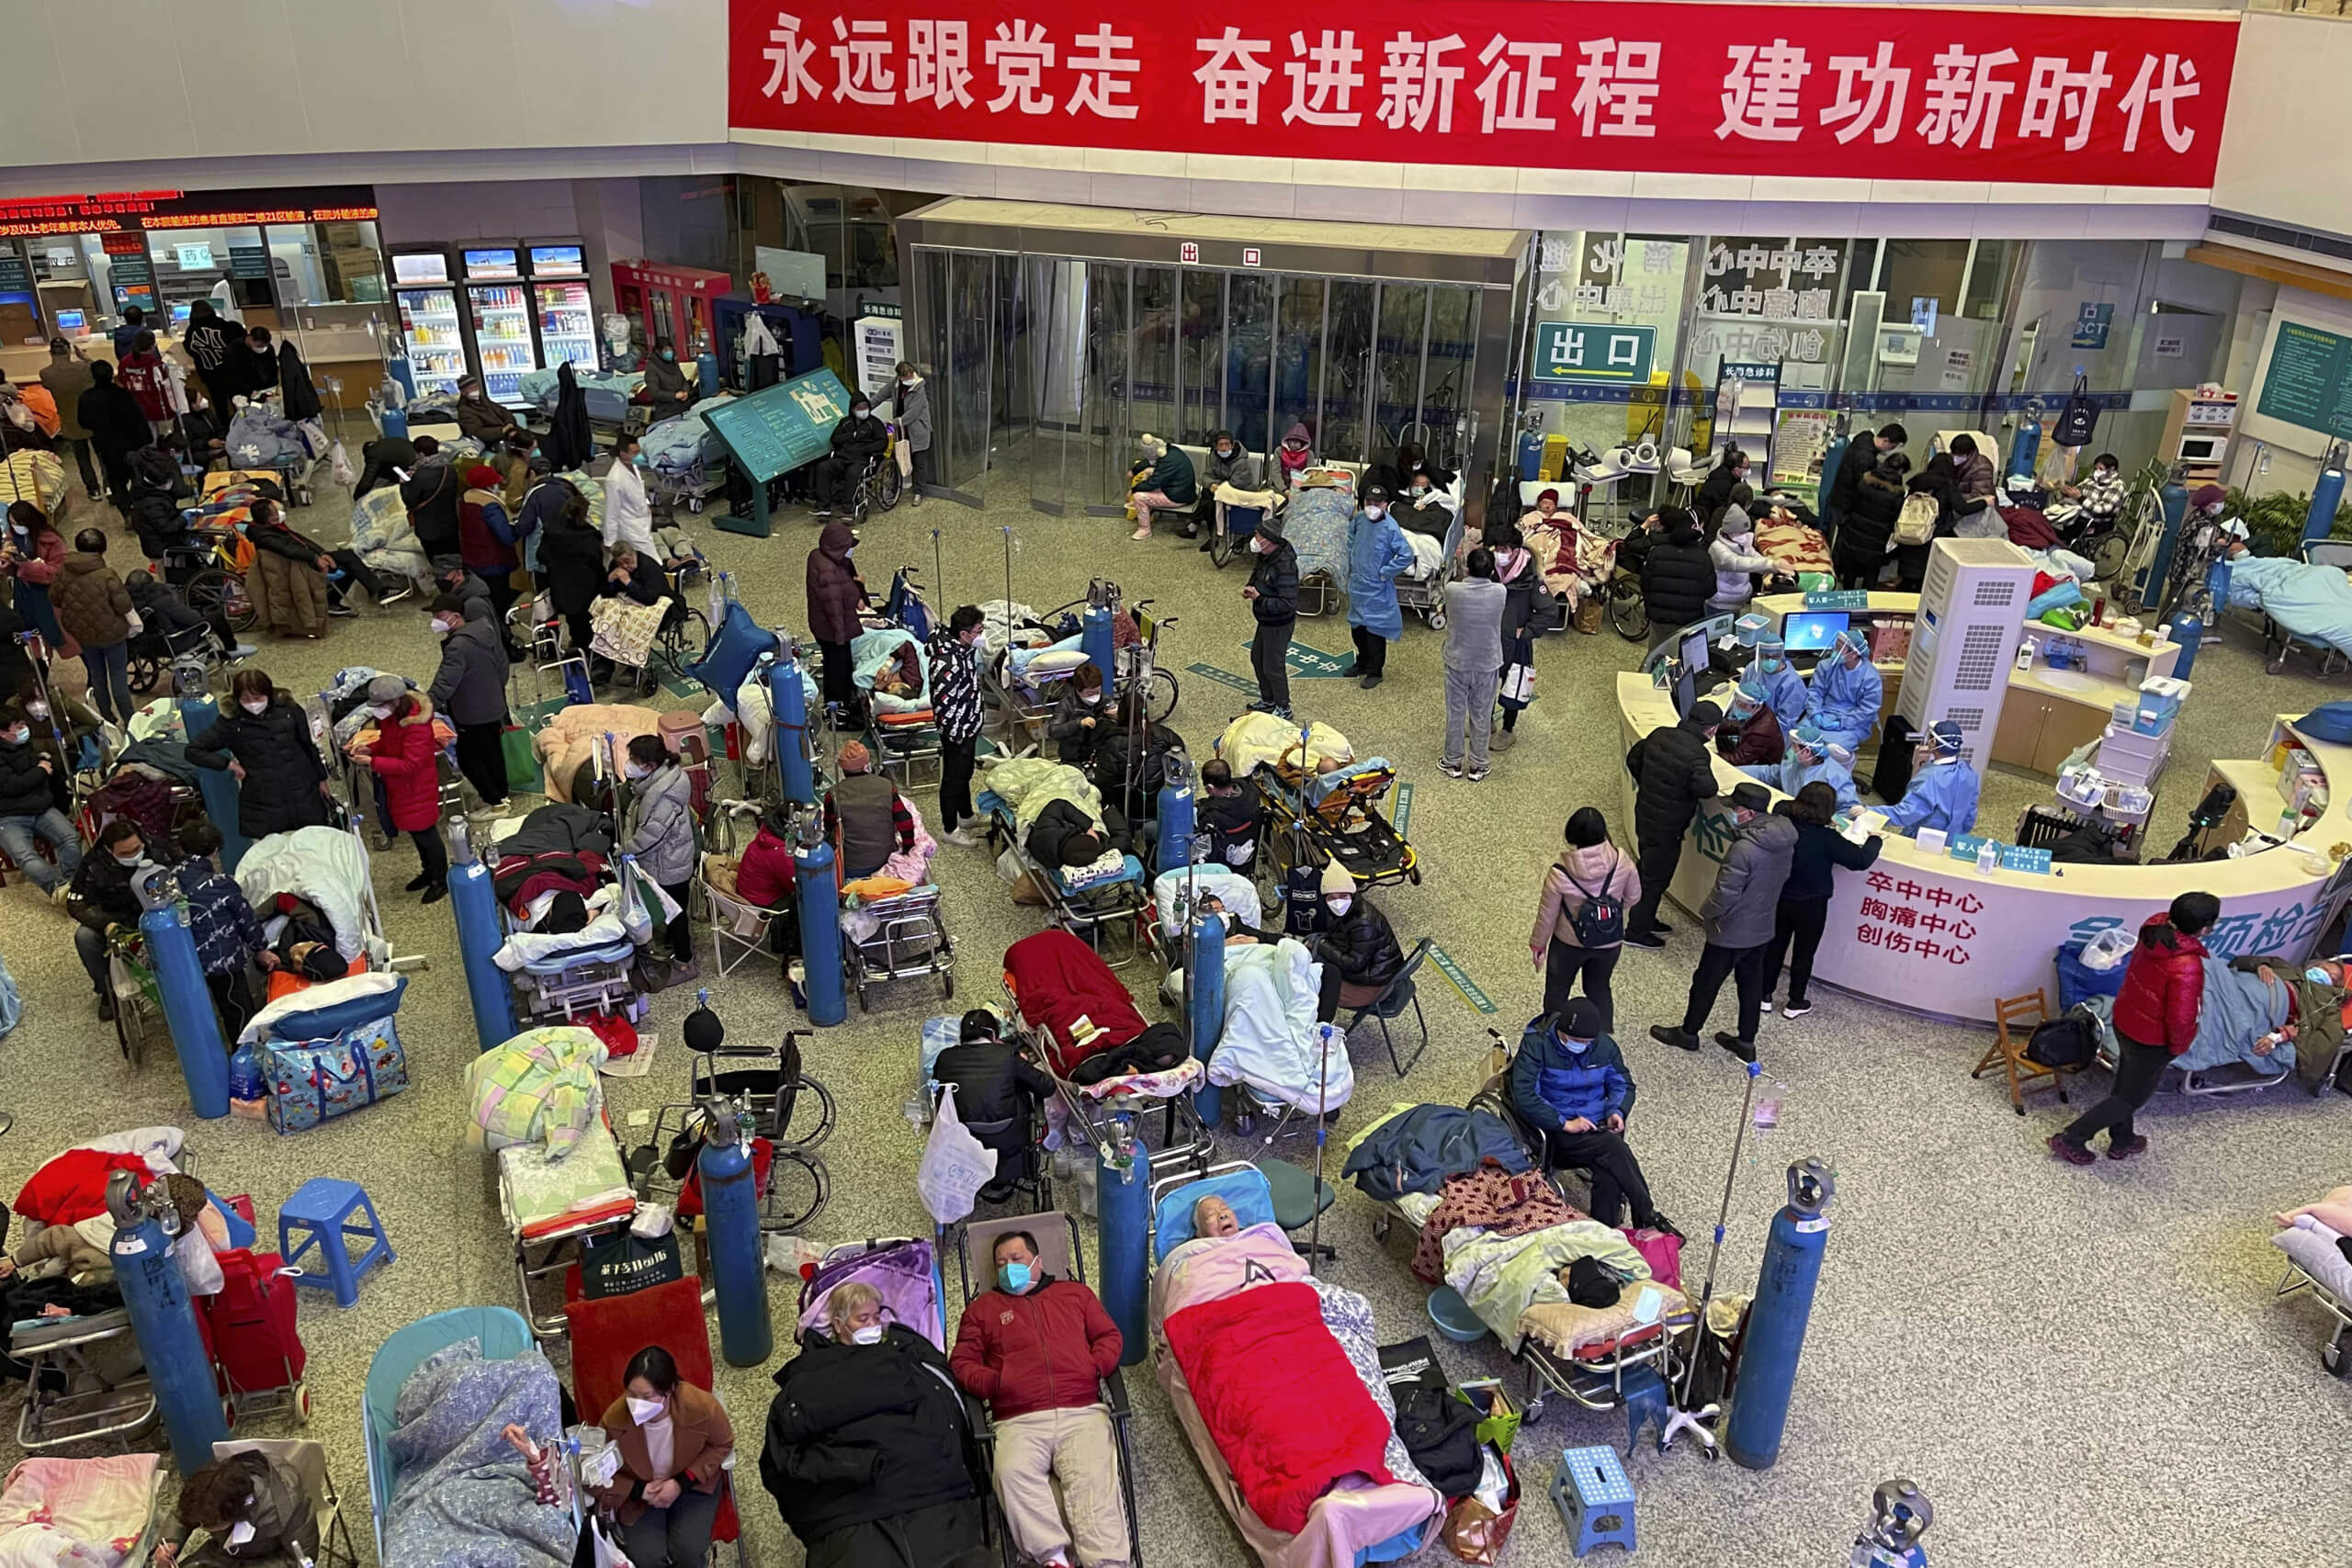 2. Januar 2023: voller Raum in einem Krankenhaus in Shanghai, China wegen Covid-19